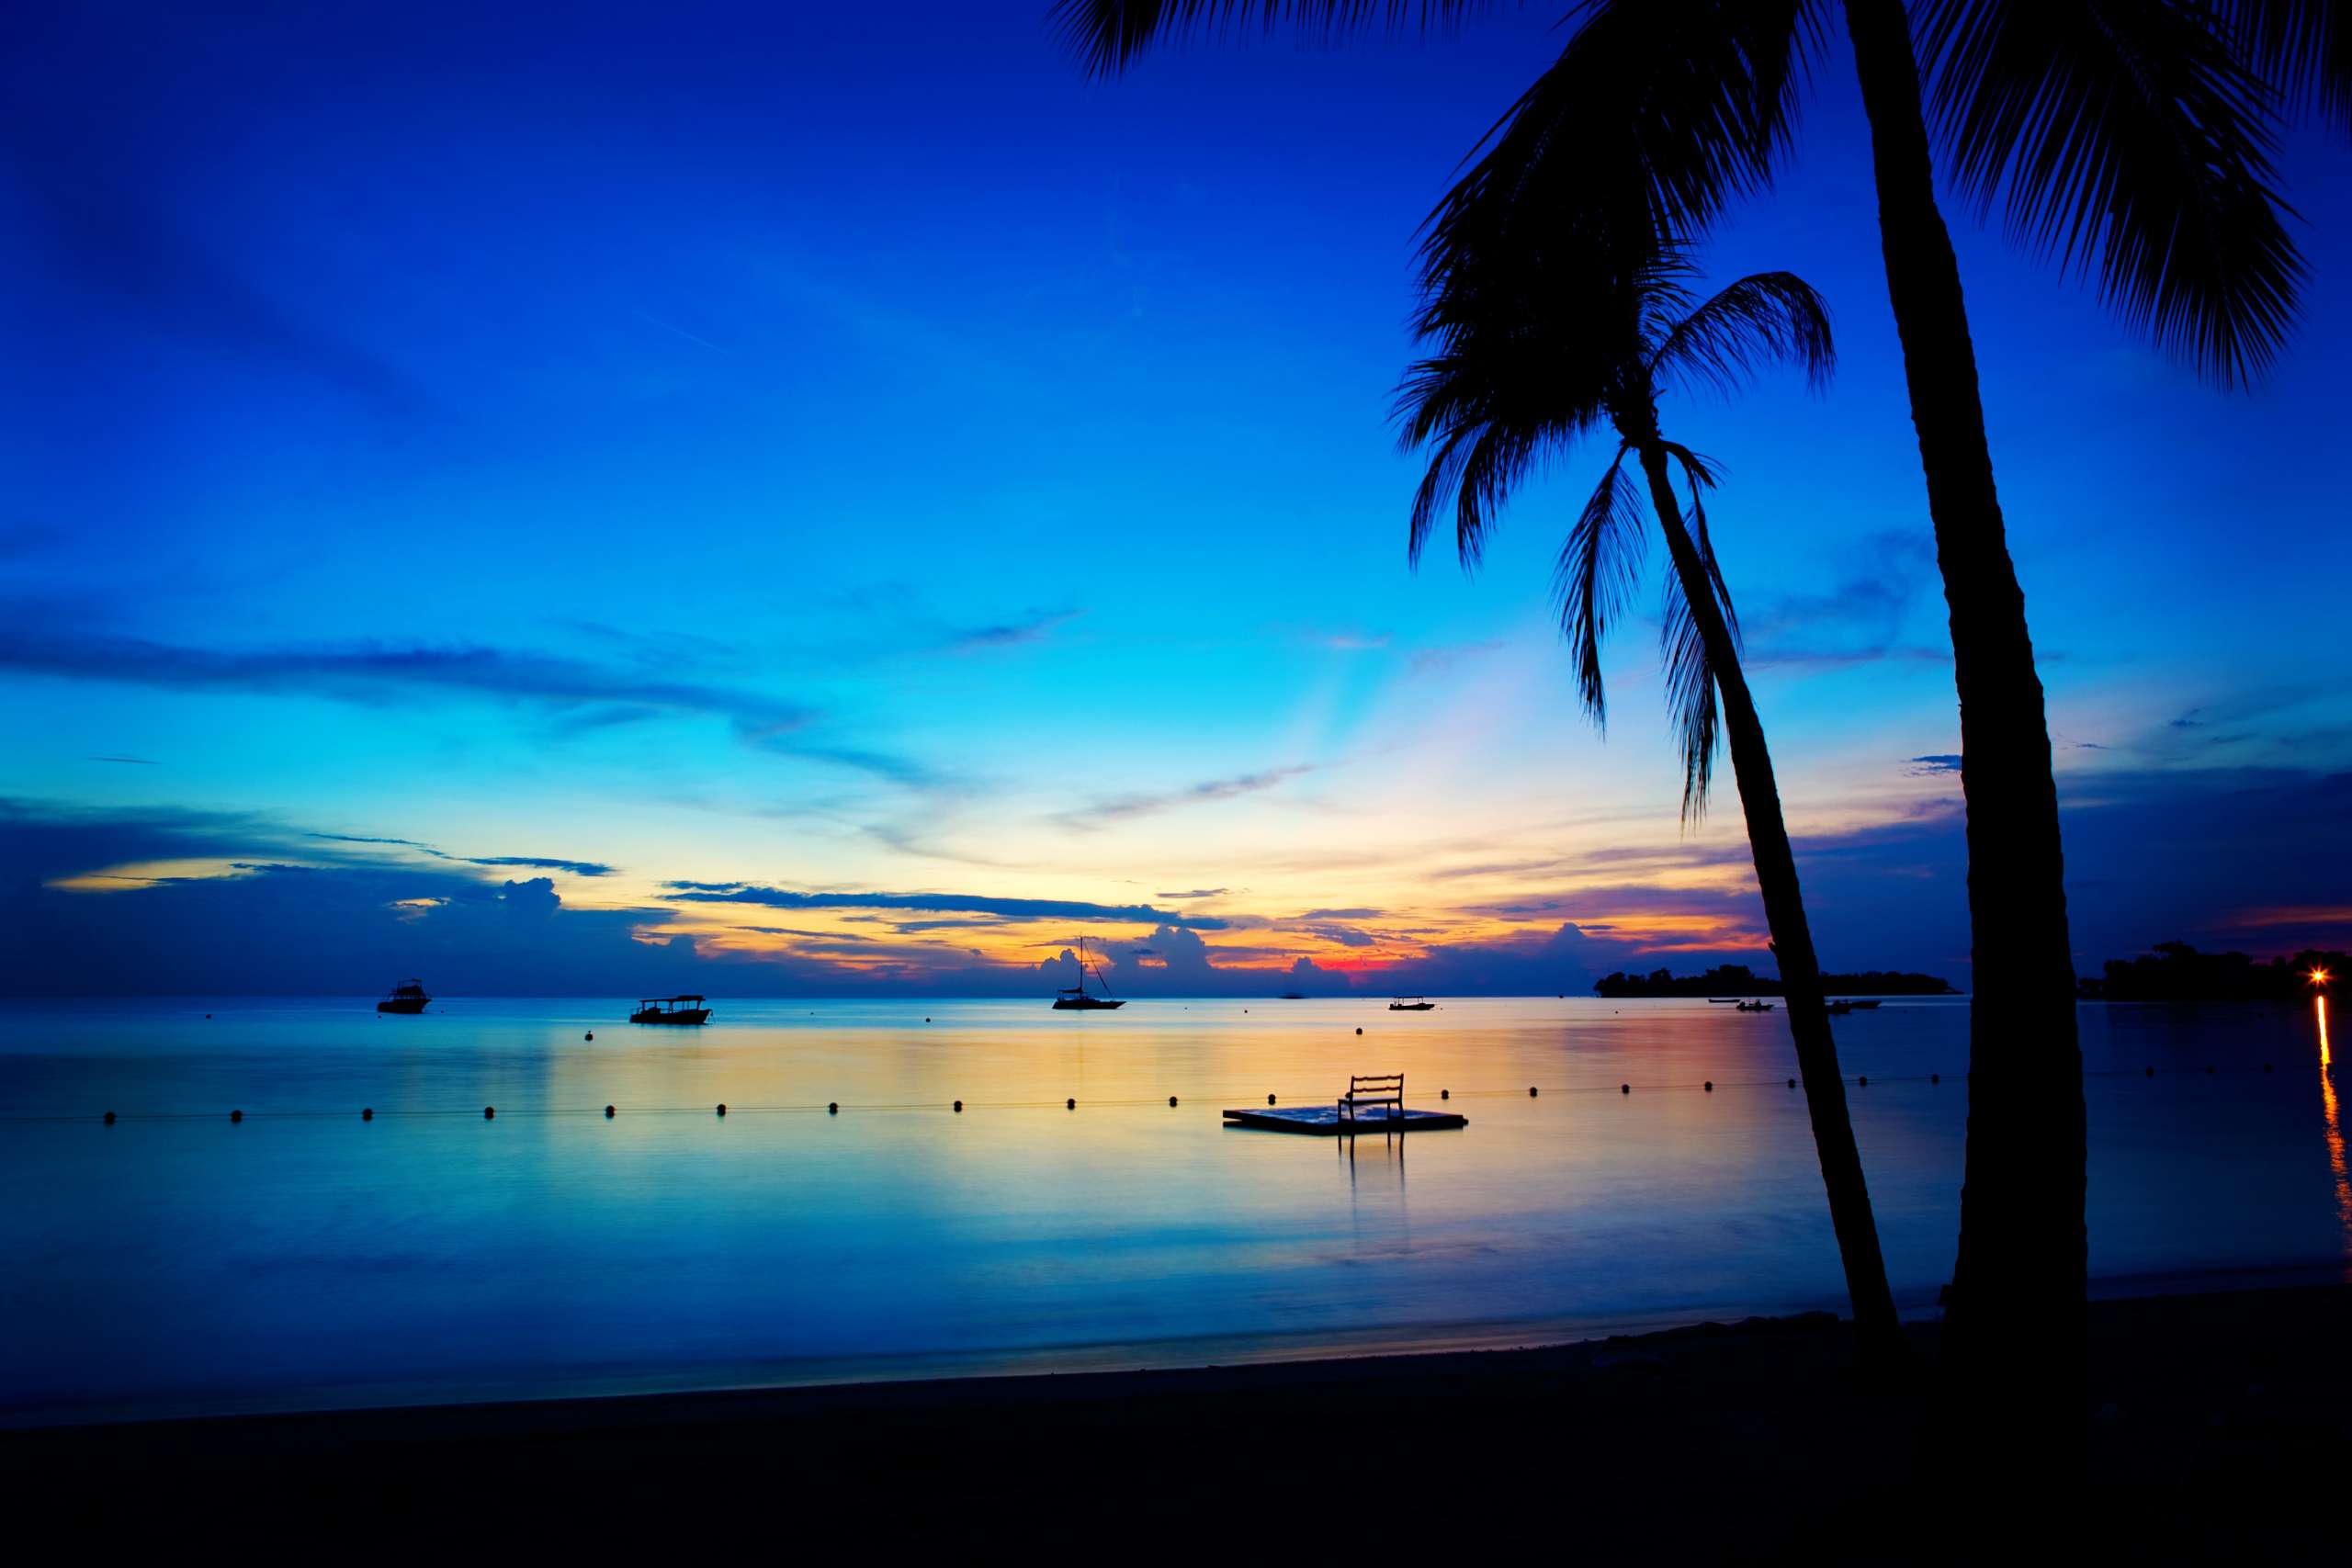 Evening sunset in Jamaica